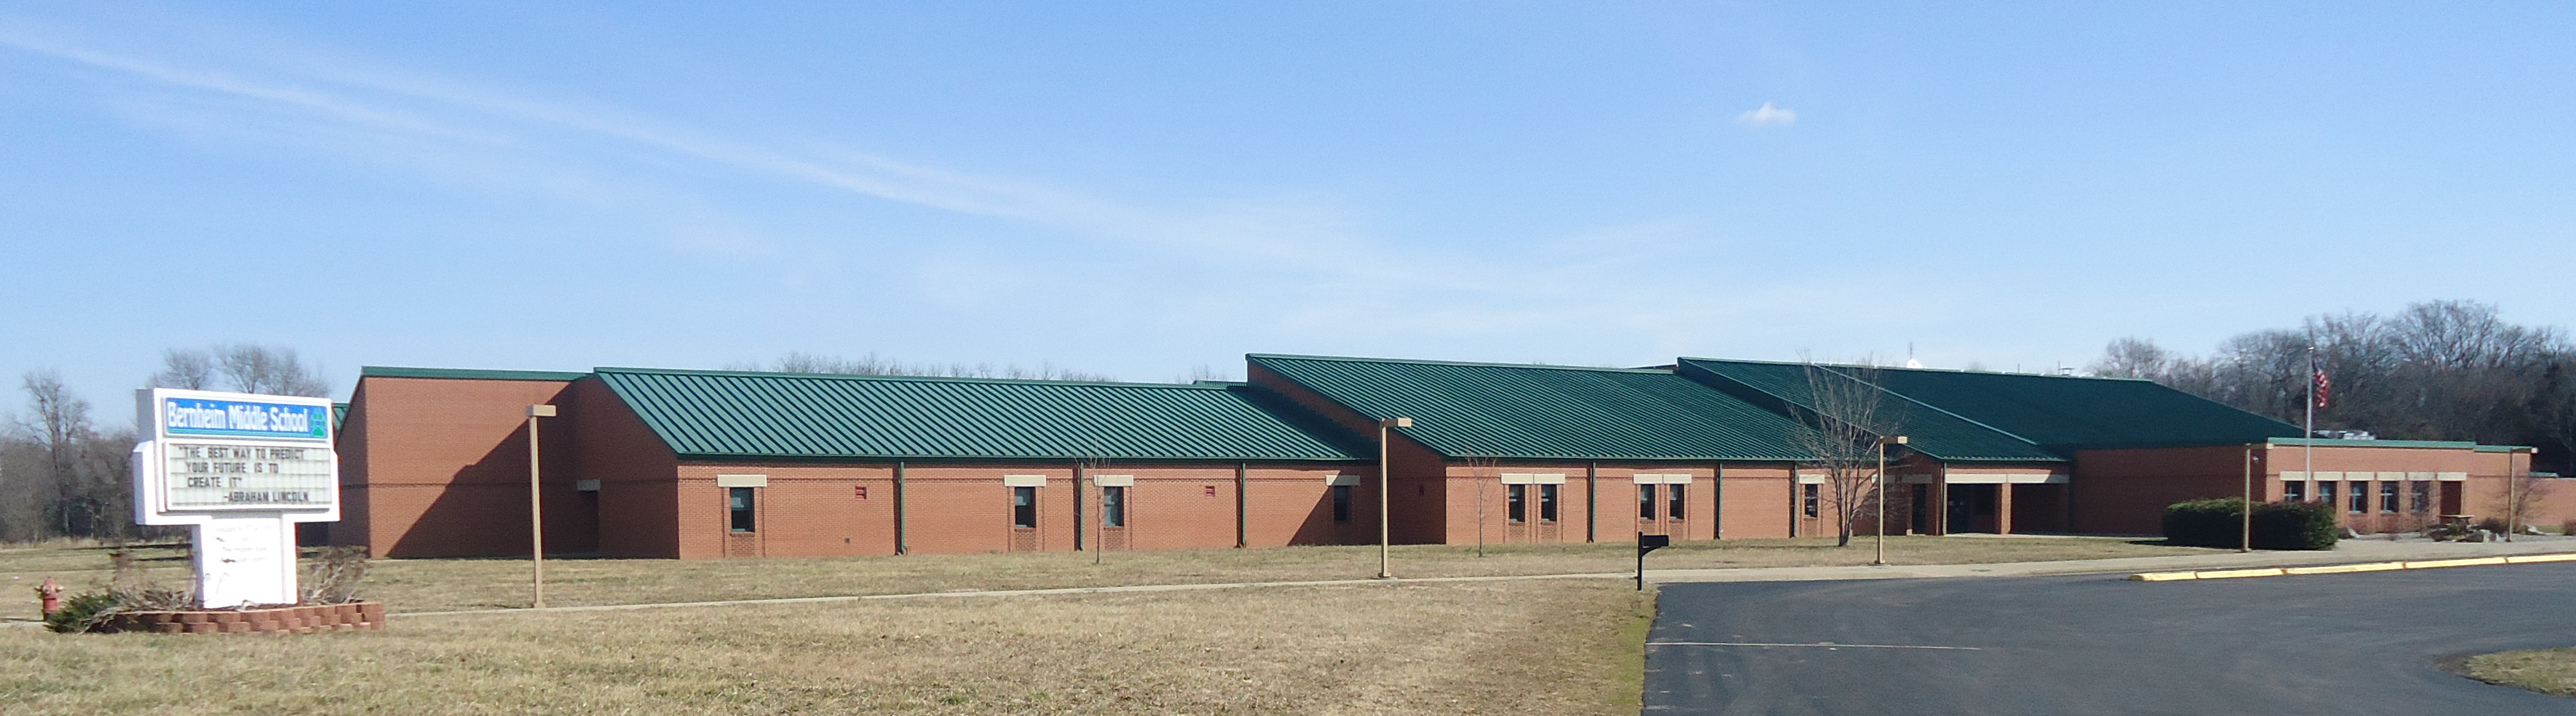 image of school building